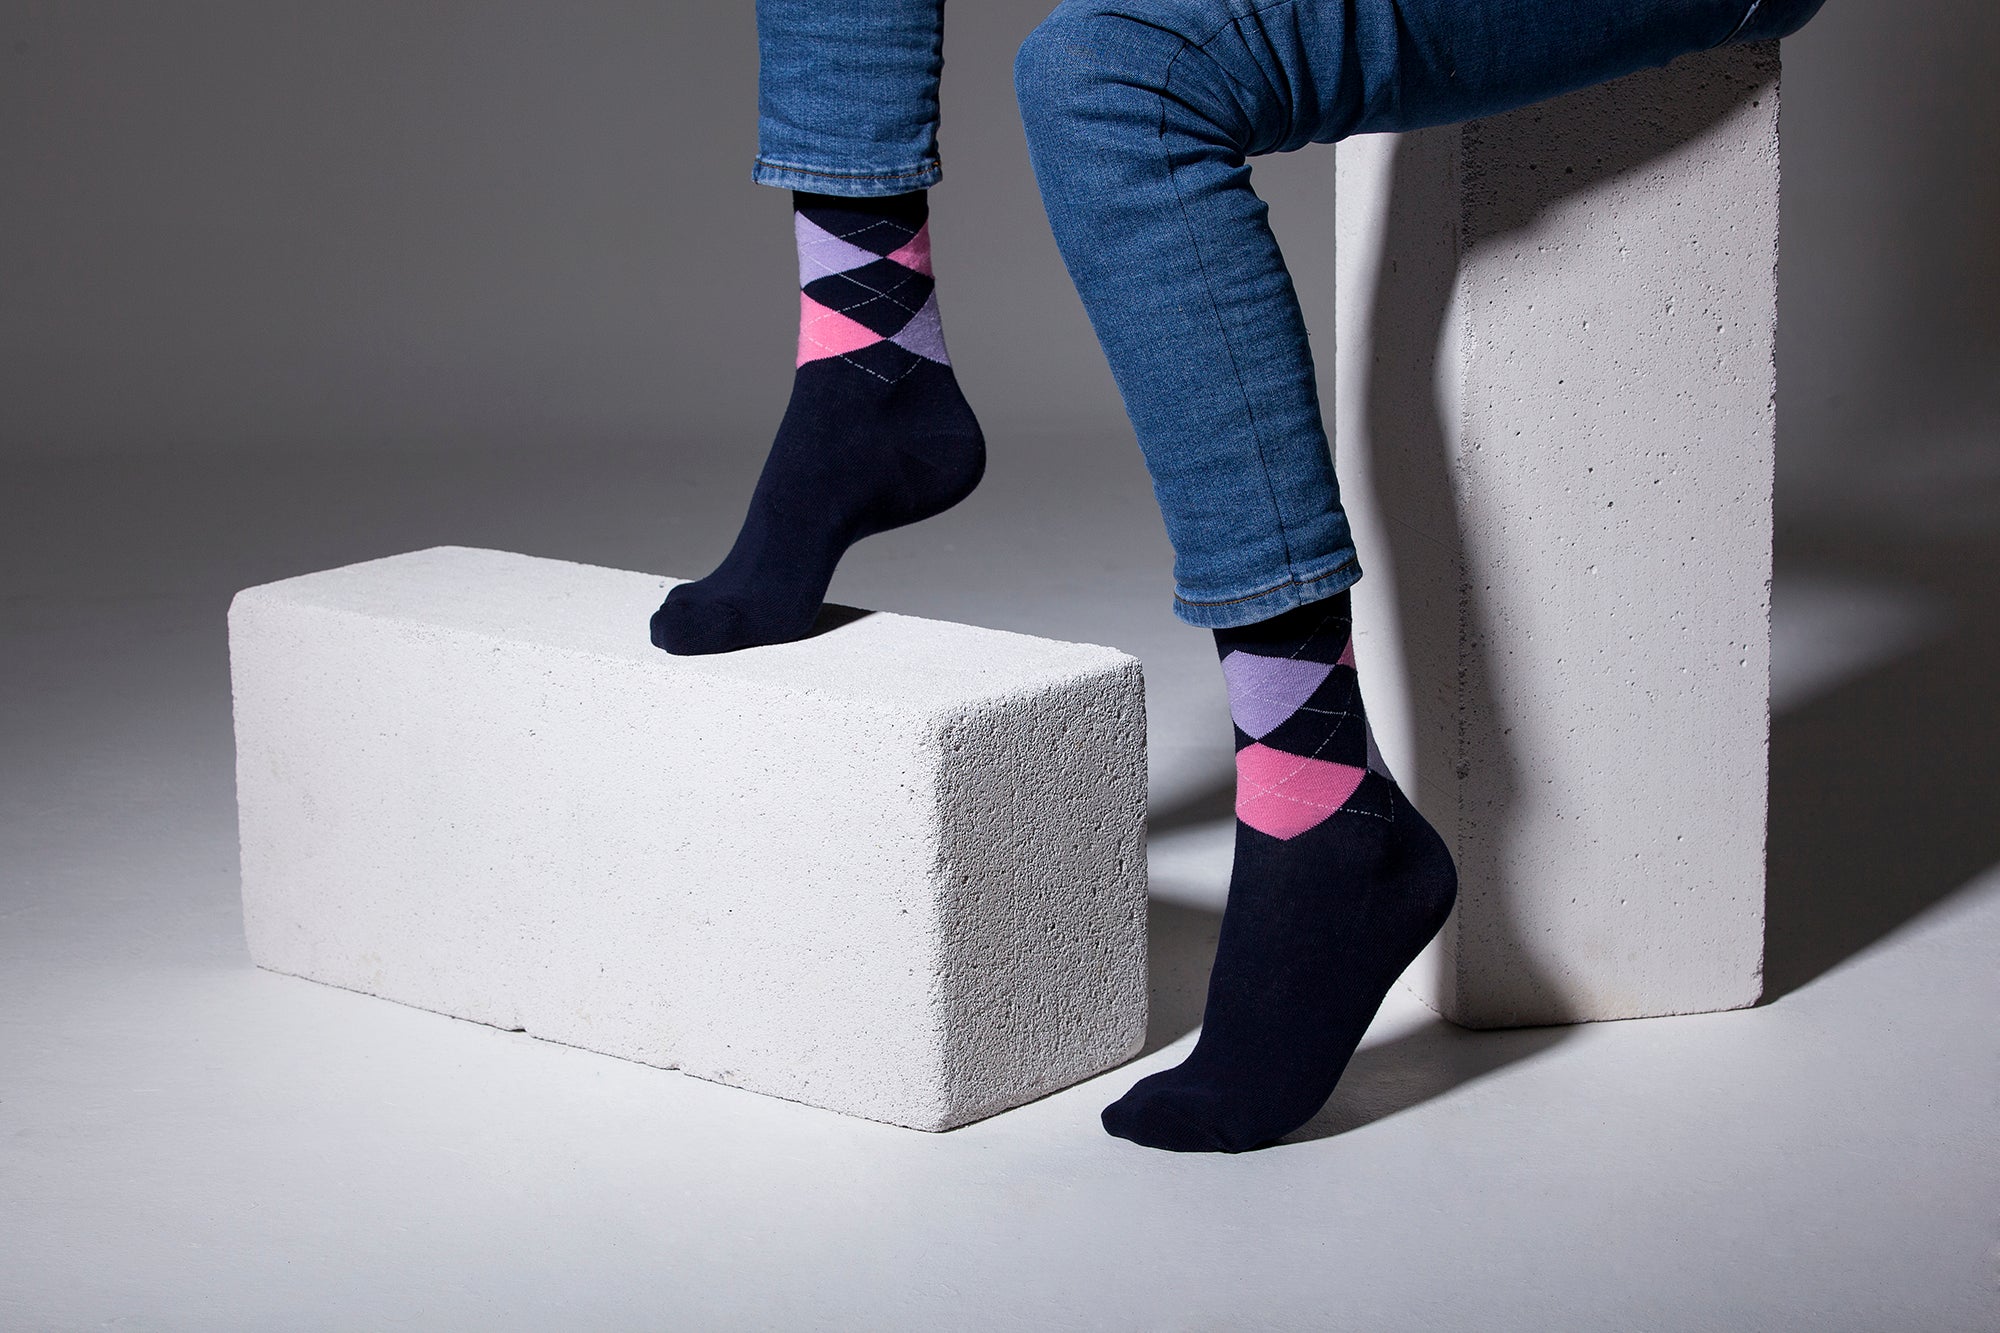 Men's Navy Lavender Argyle Socks